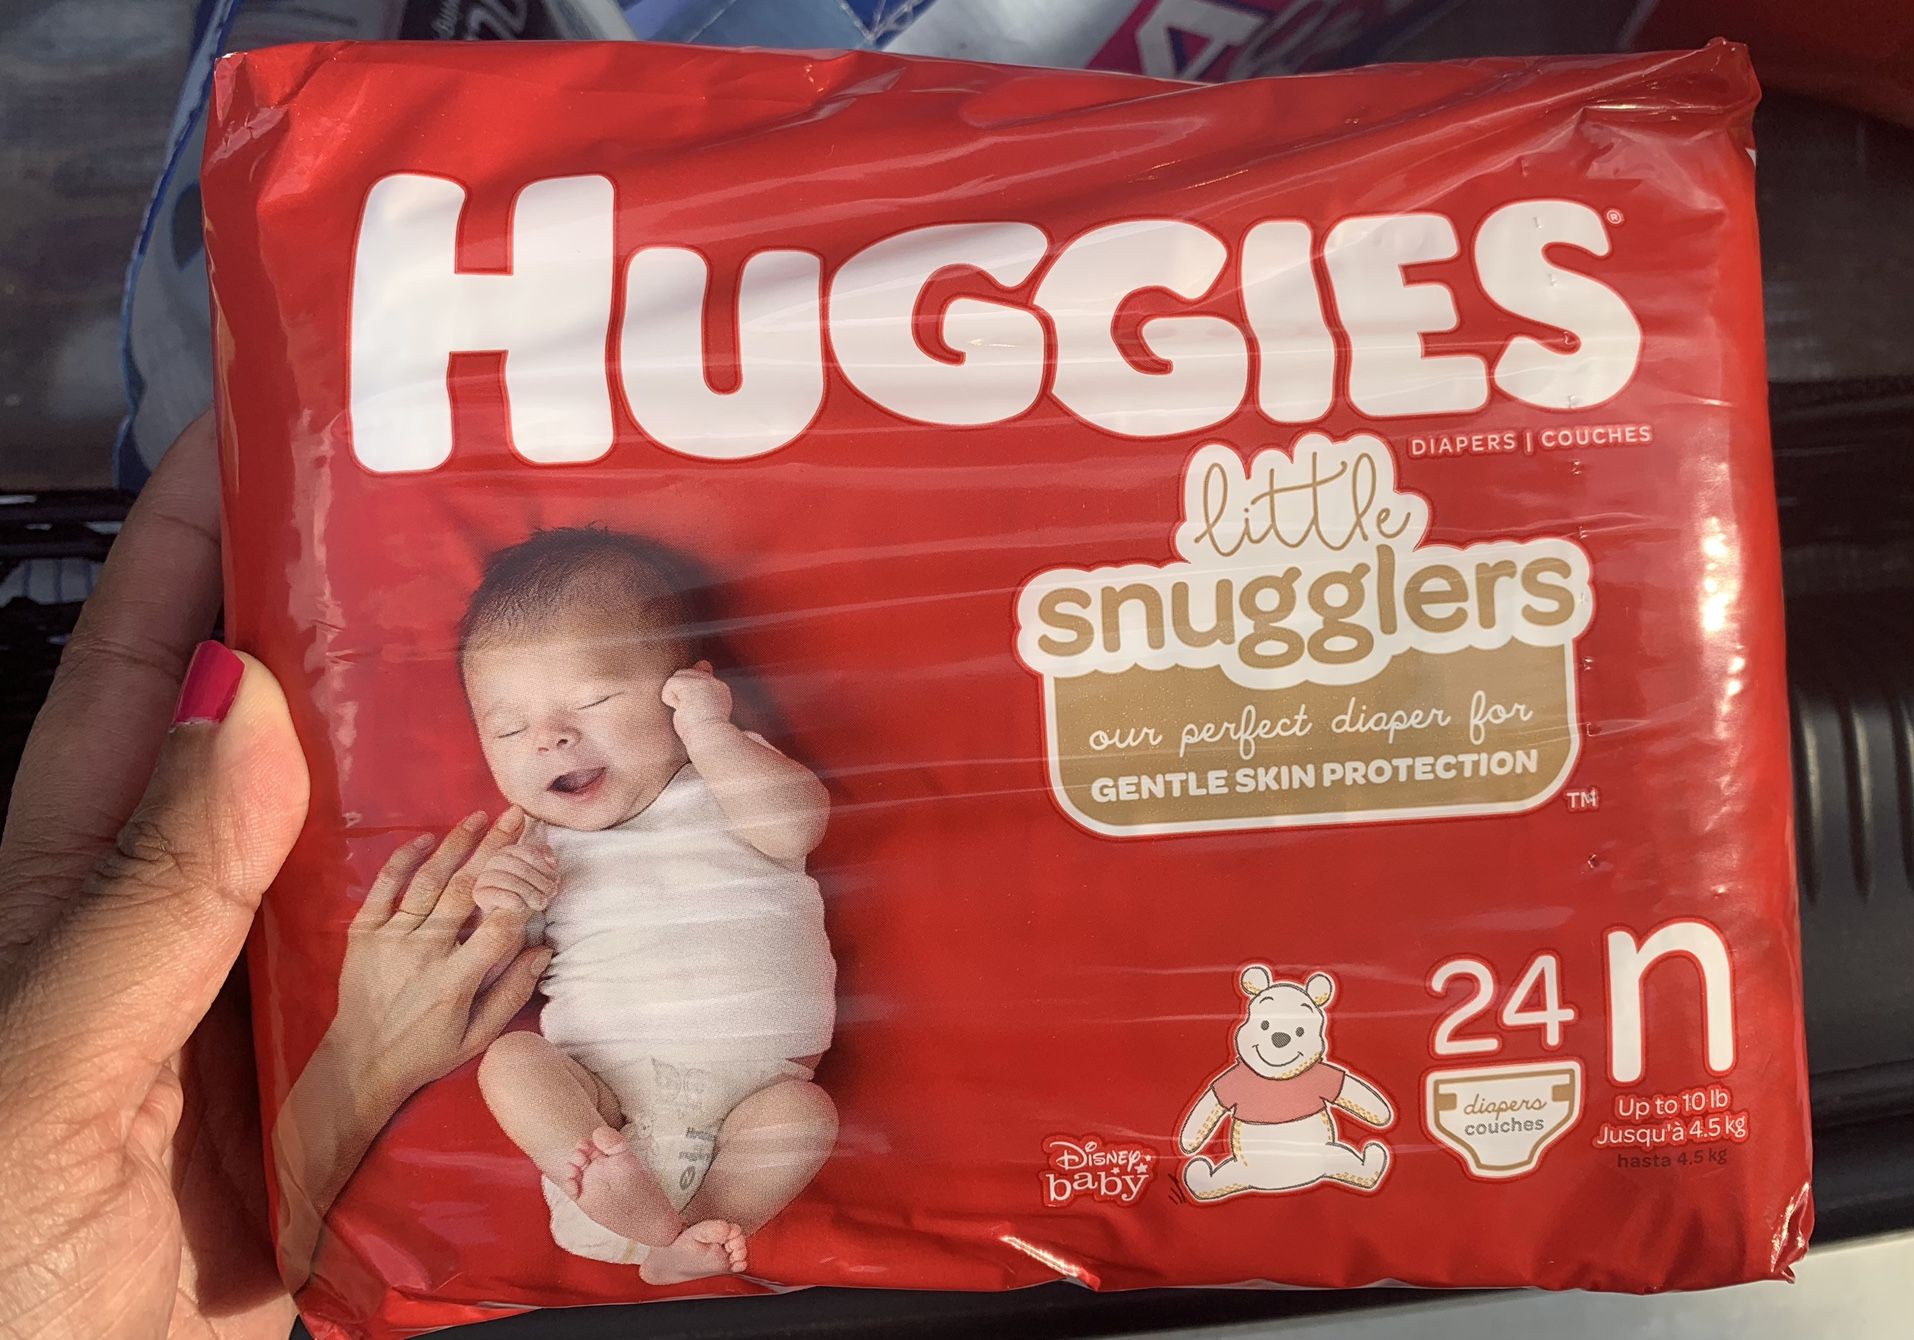 Huggies Newborn Diaper Gift Bag